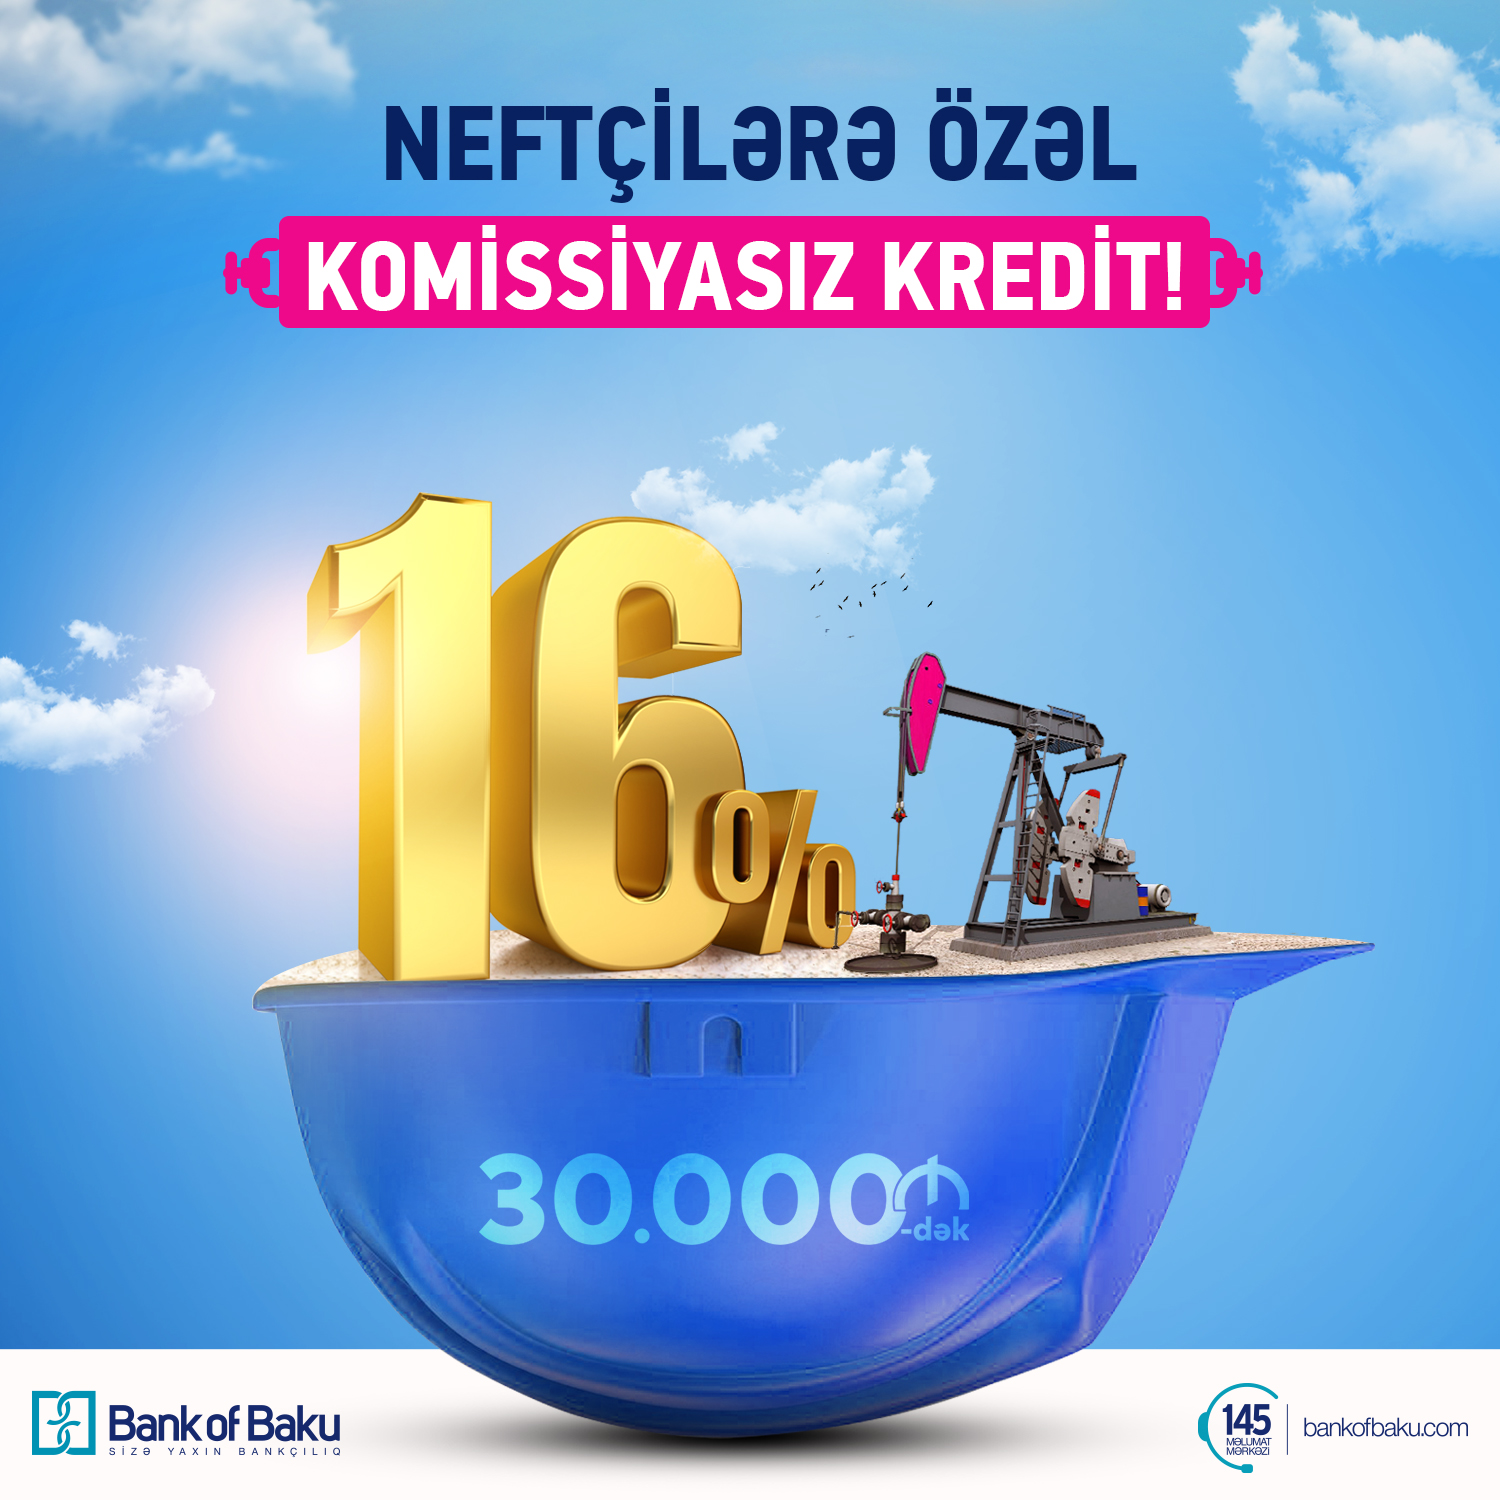 Bank of Baku-dan Neftçilərə 30.000 AZN-dək kredit – illik 16%-lə və KOMİSSİYASIZ!